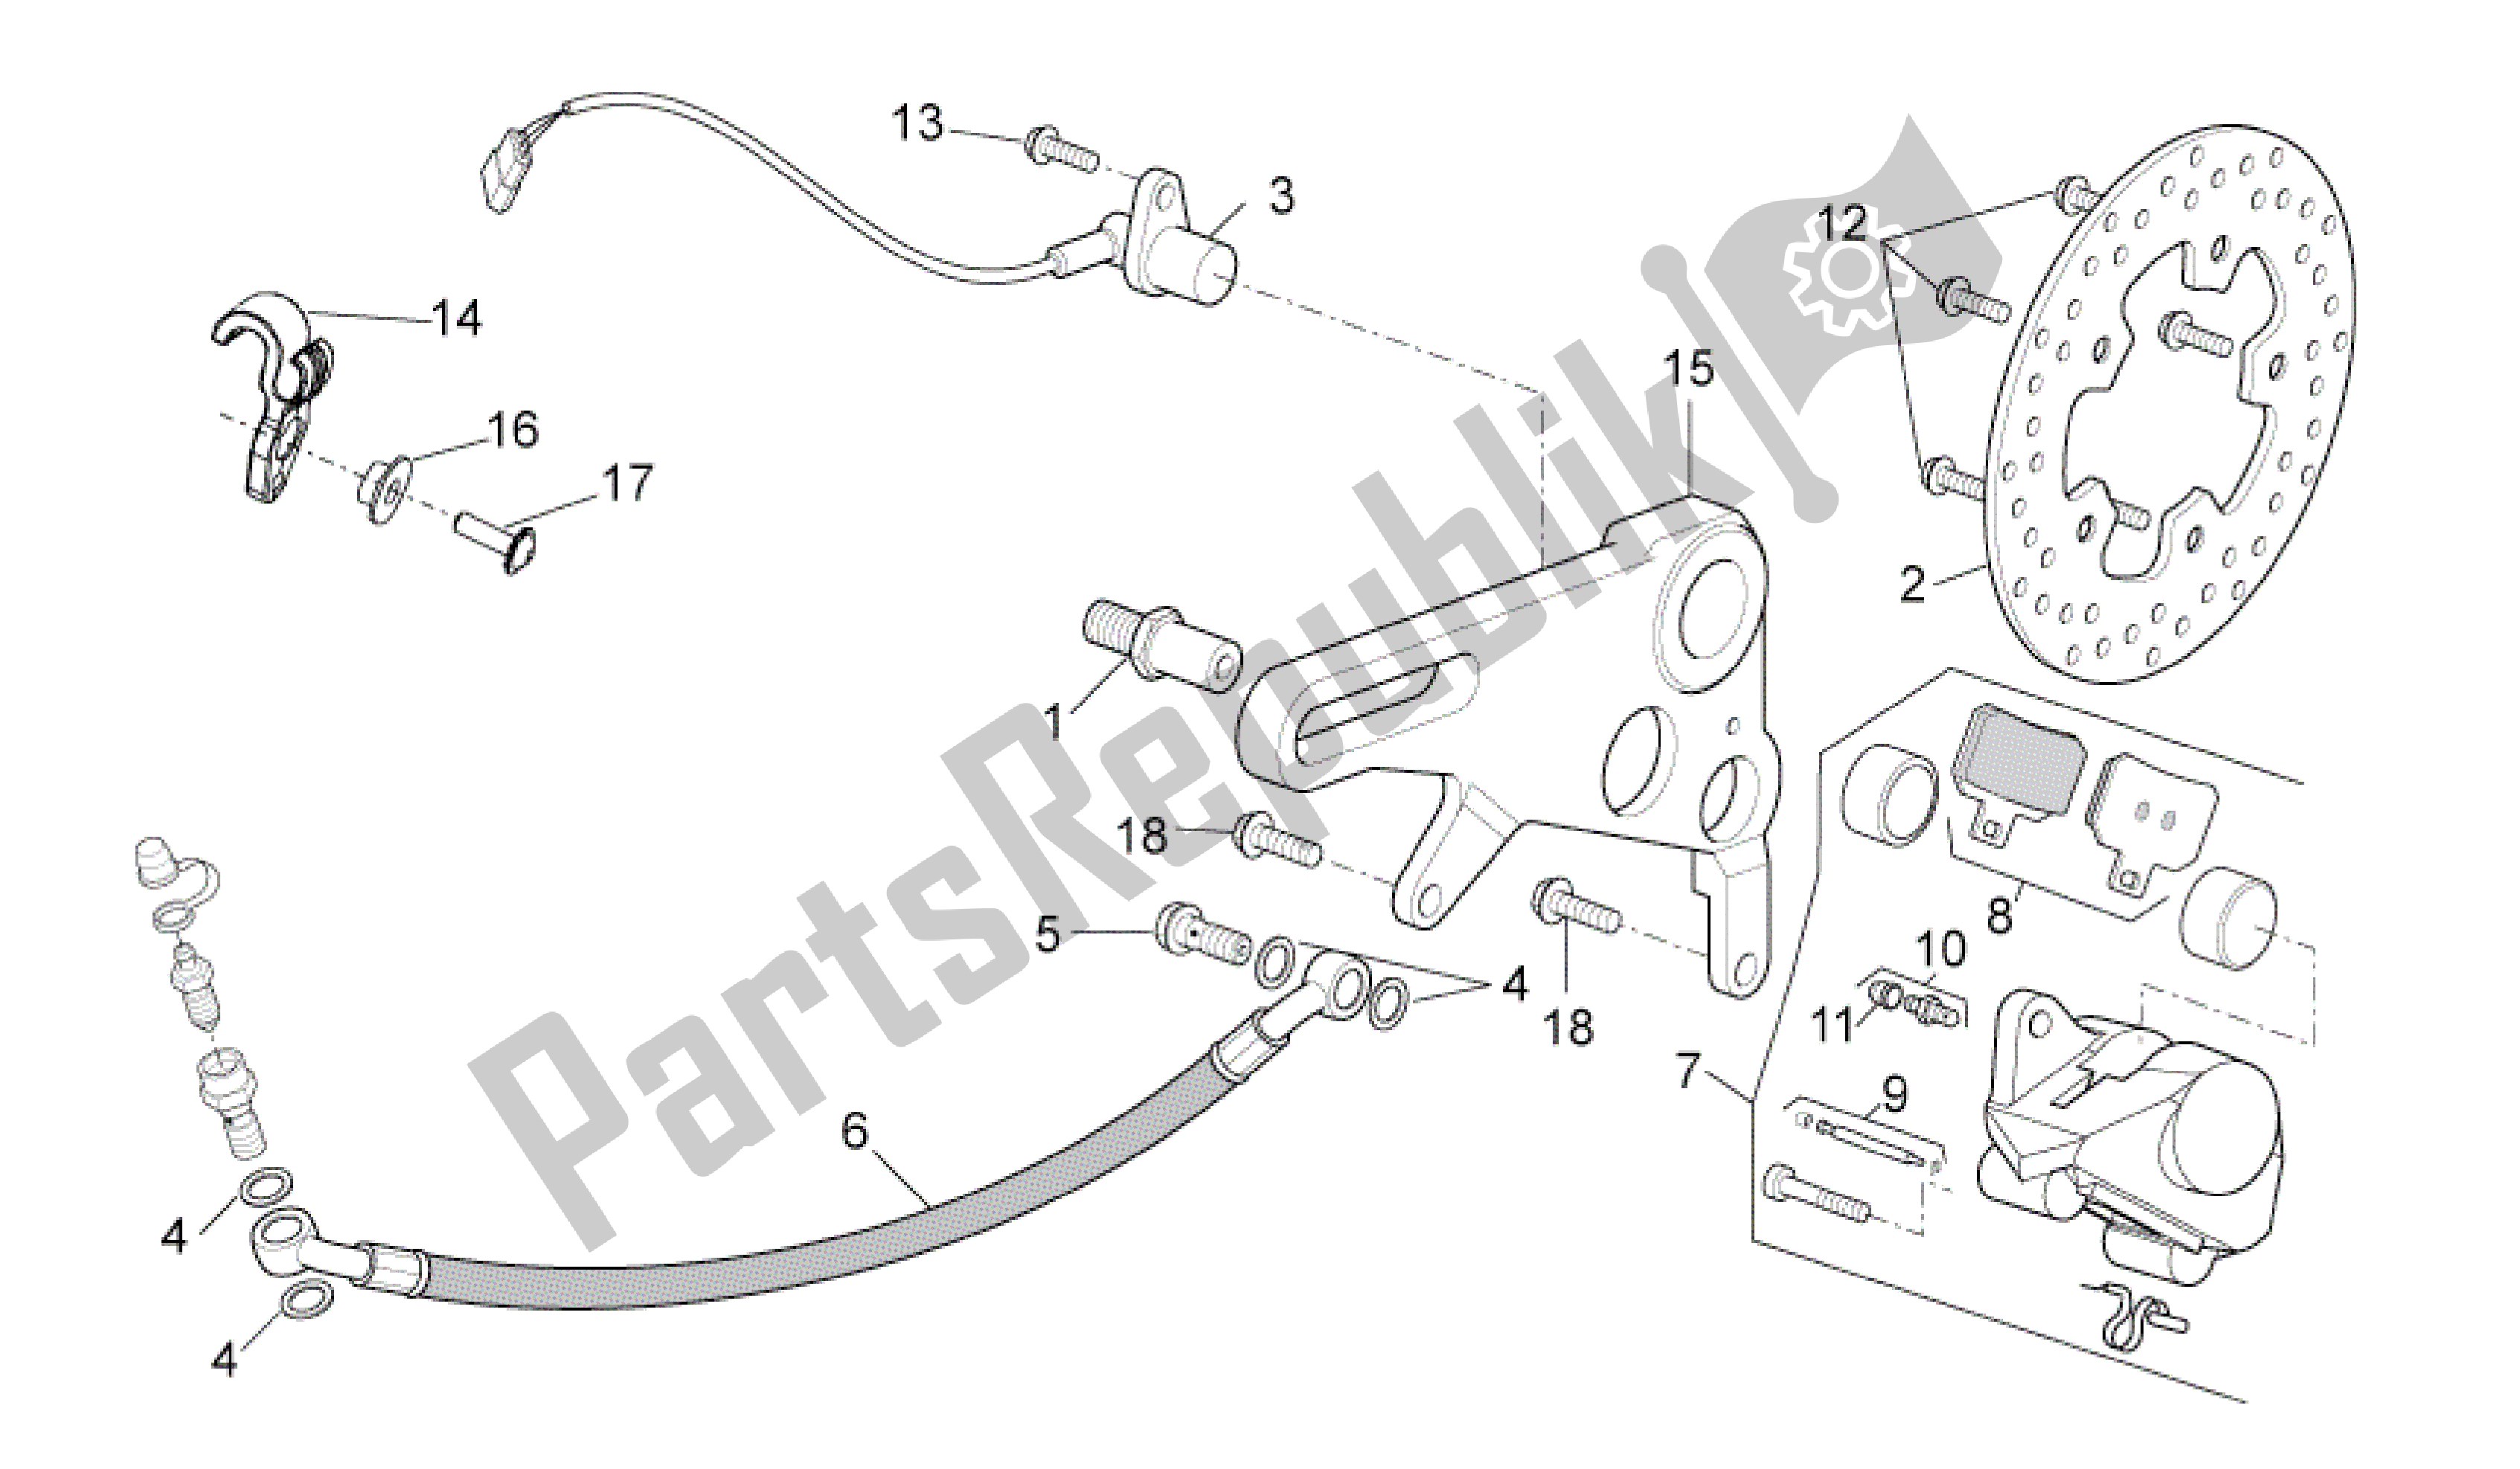 All parts for the Rear Brake Caliper of the Aprilia RSV4 Aprc Factory 3981 1000 2011 - 2012